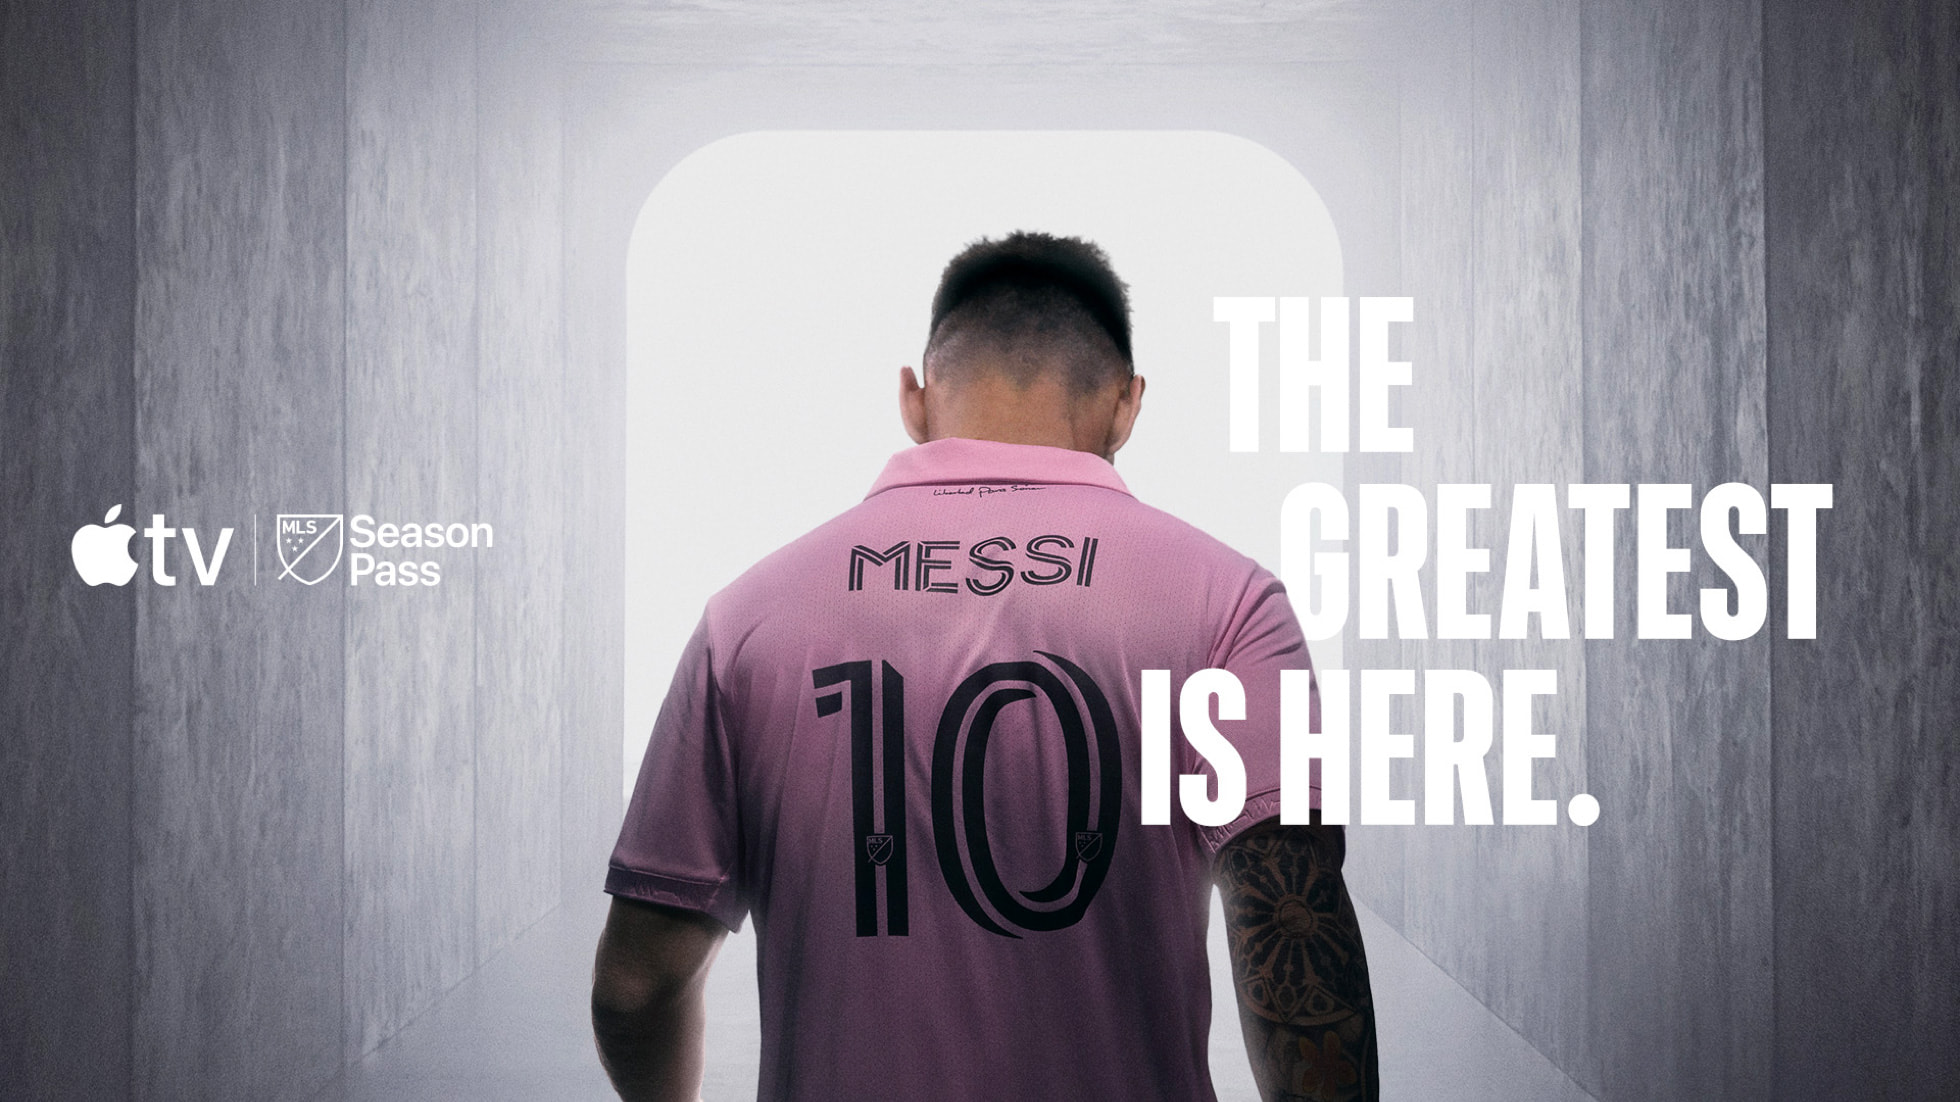 Campanha da Apple TV quando Messi chegou à MLS